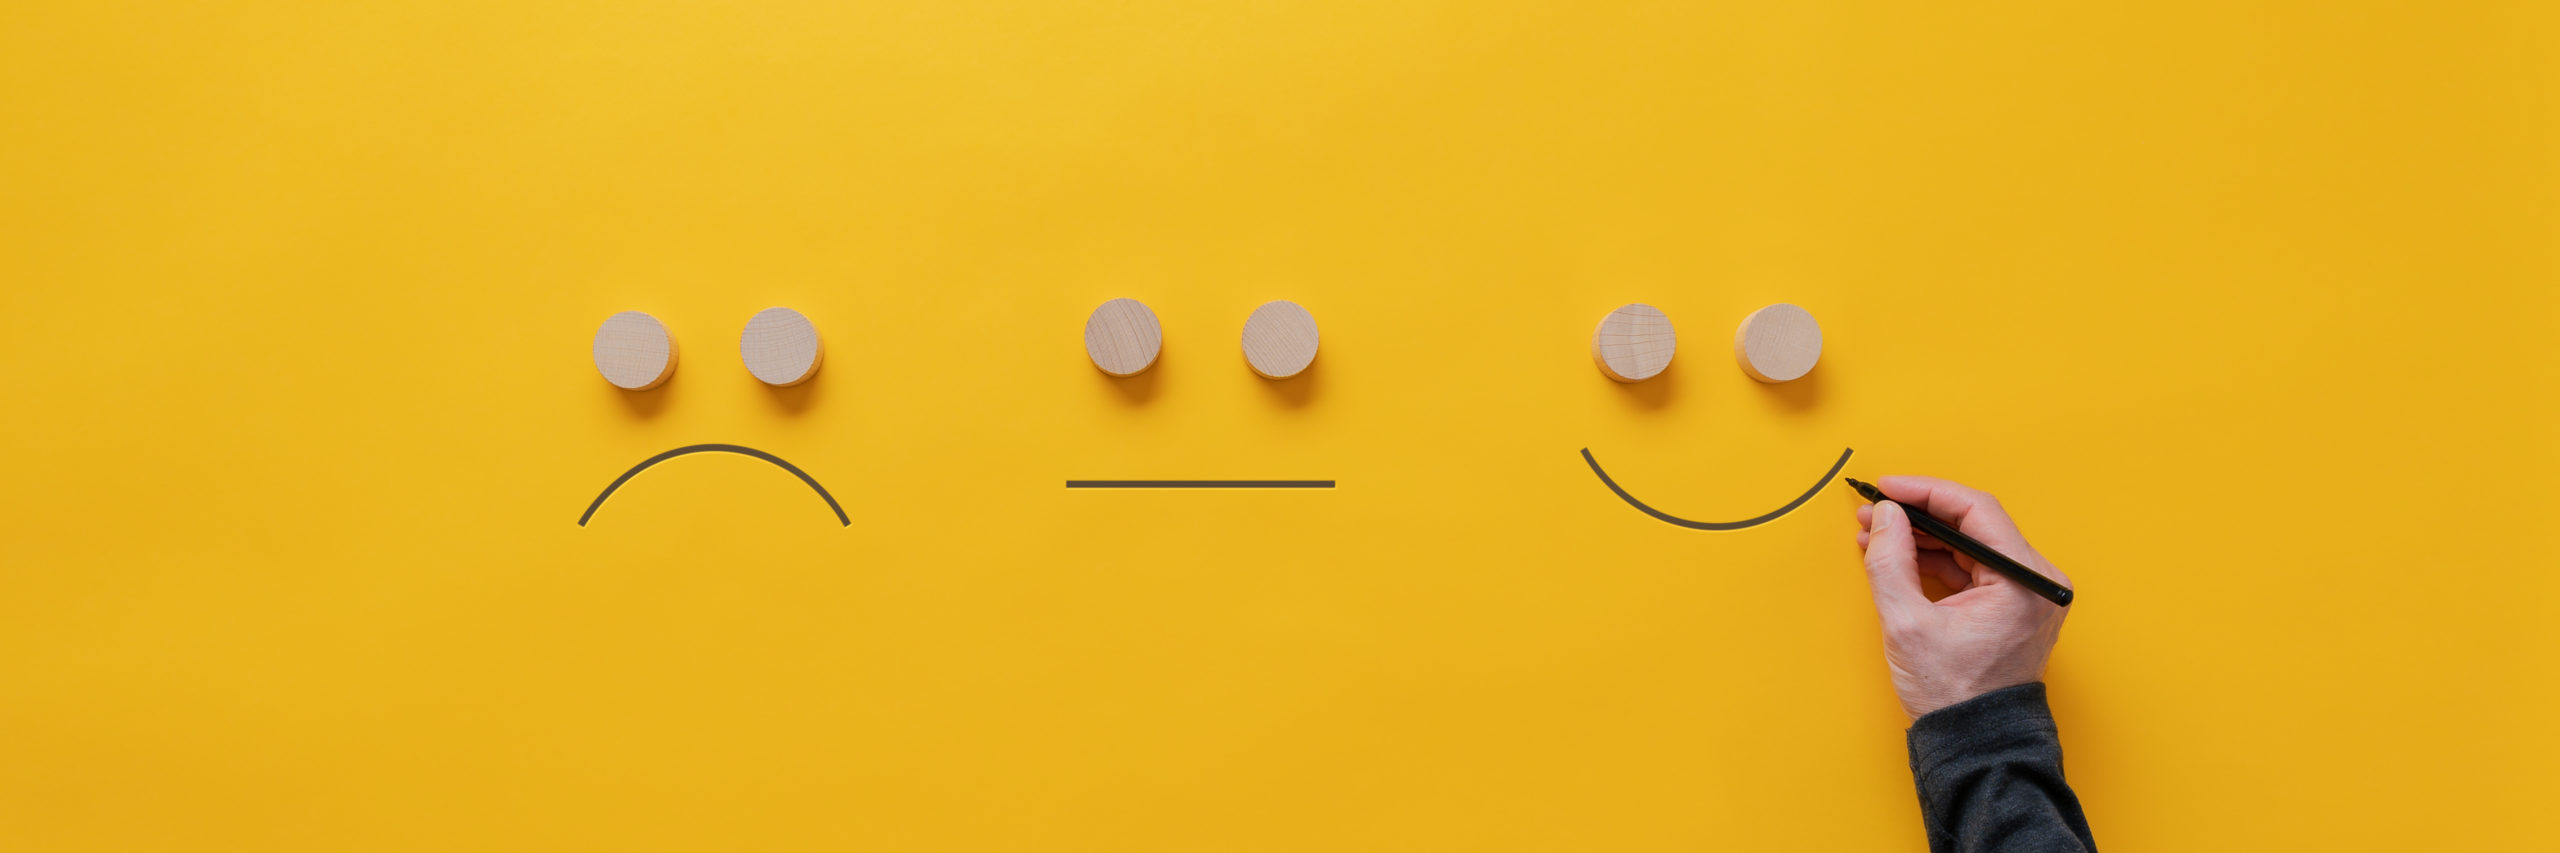 Emojis sonrientes, tristes y neutros dibujados a mano.